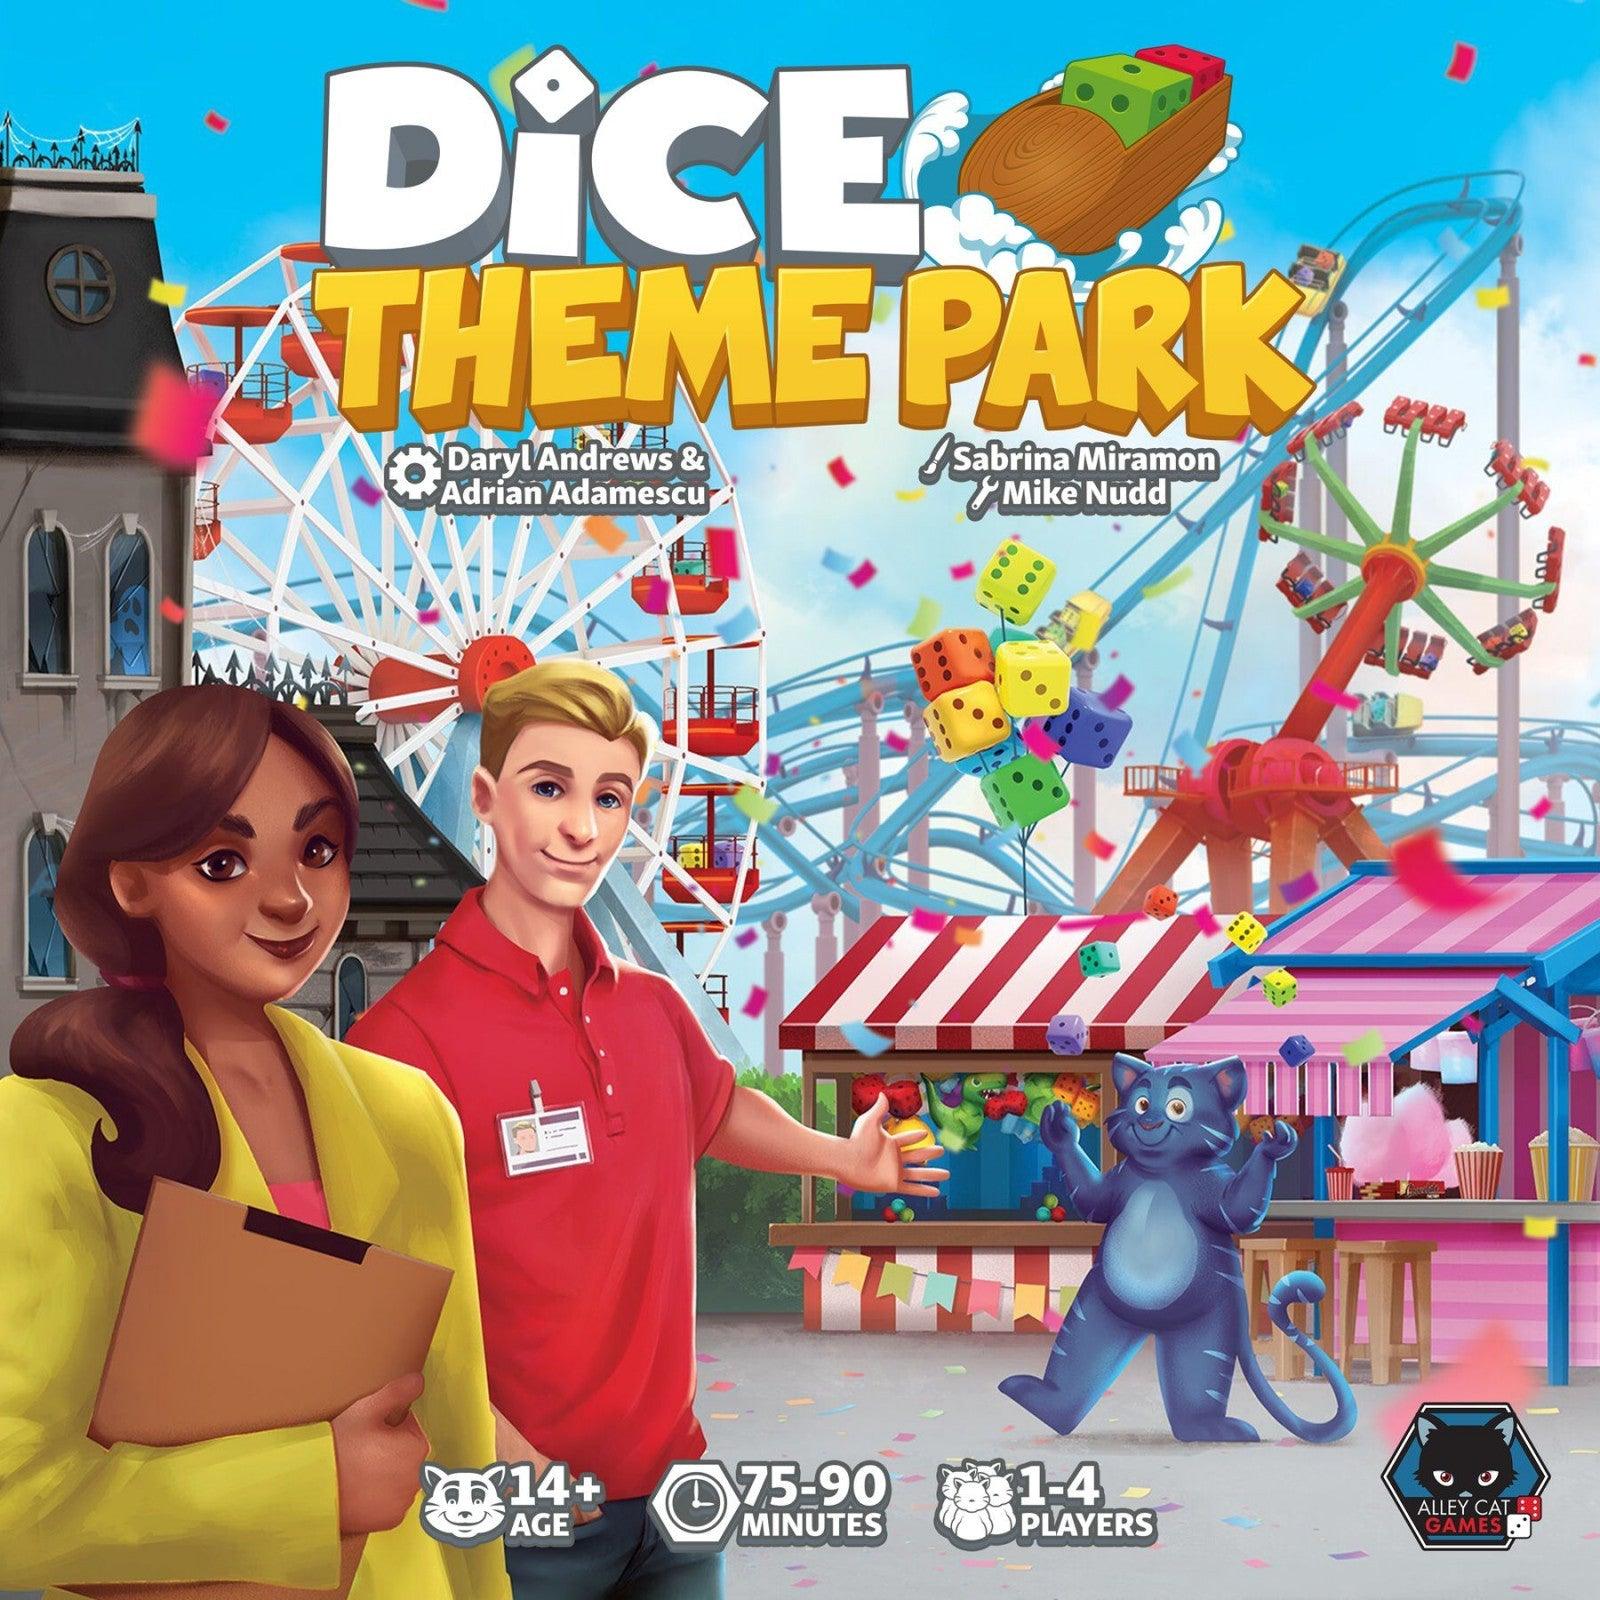 VR-101739 Dice Theme Park - Alley Cat Games - Titan Pop Culture